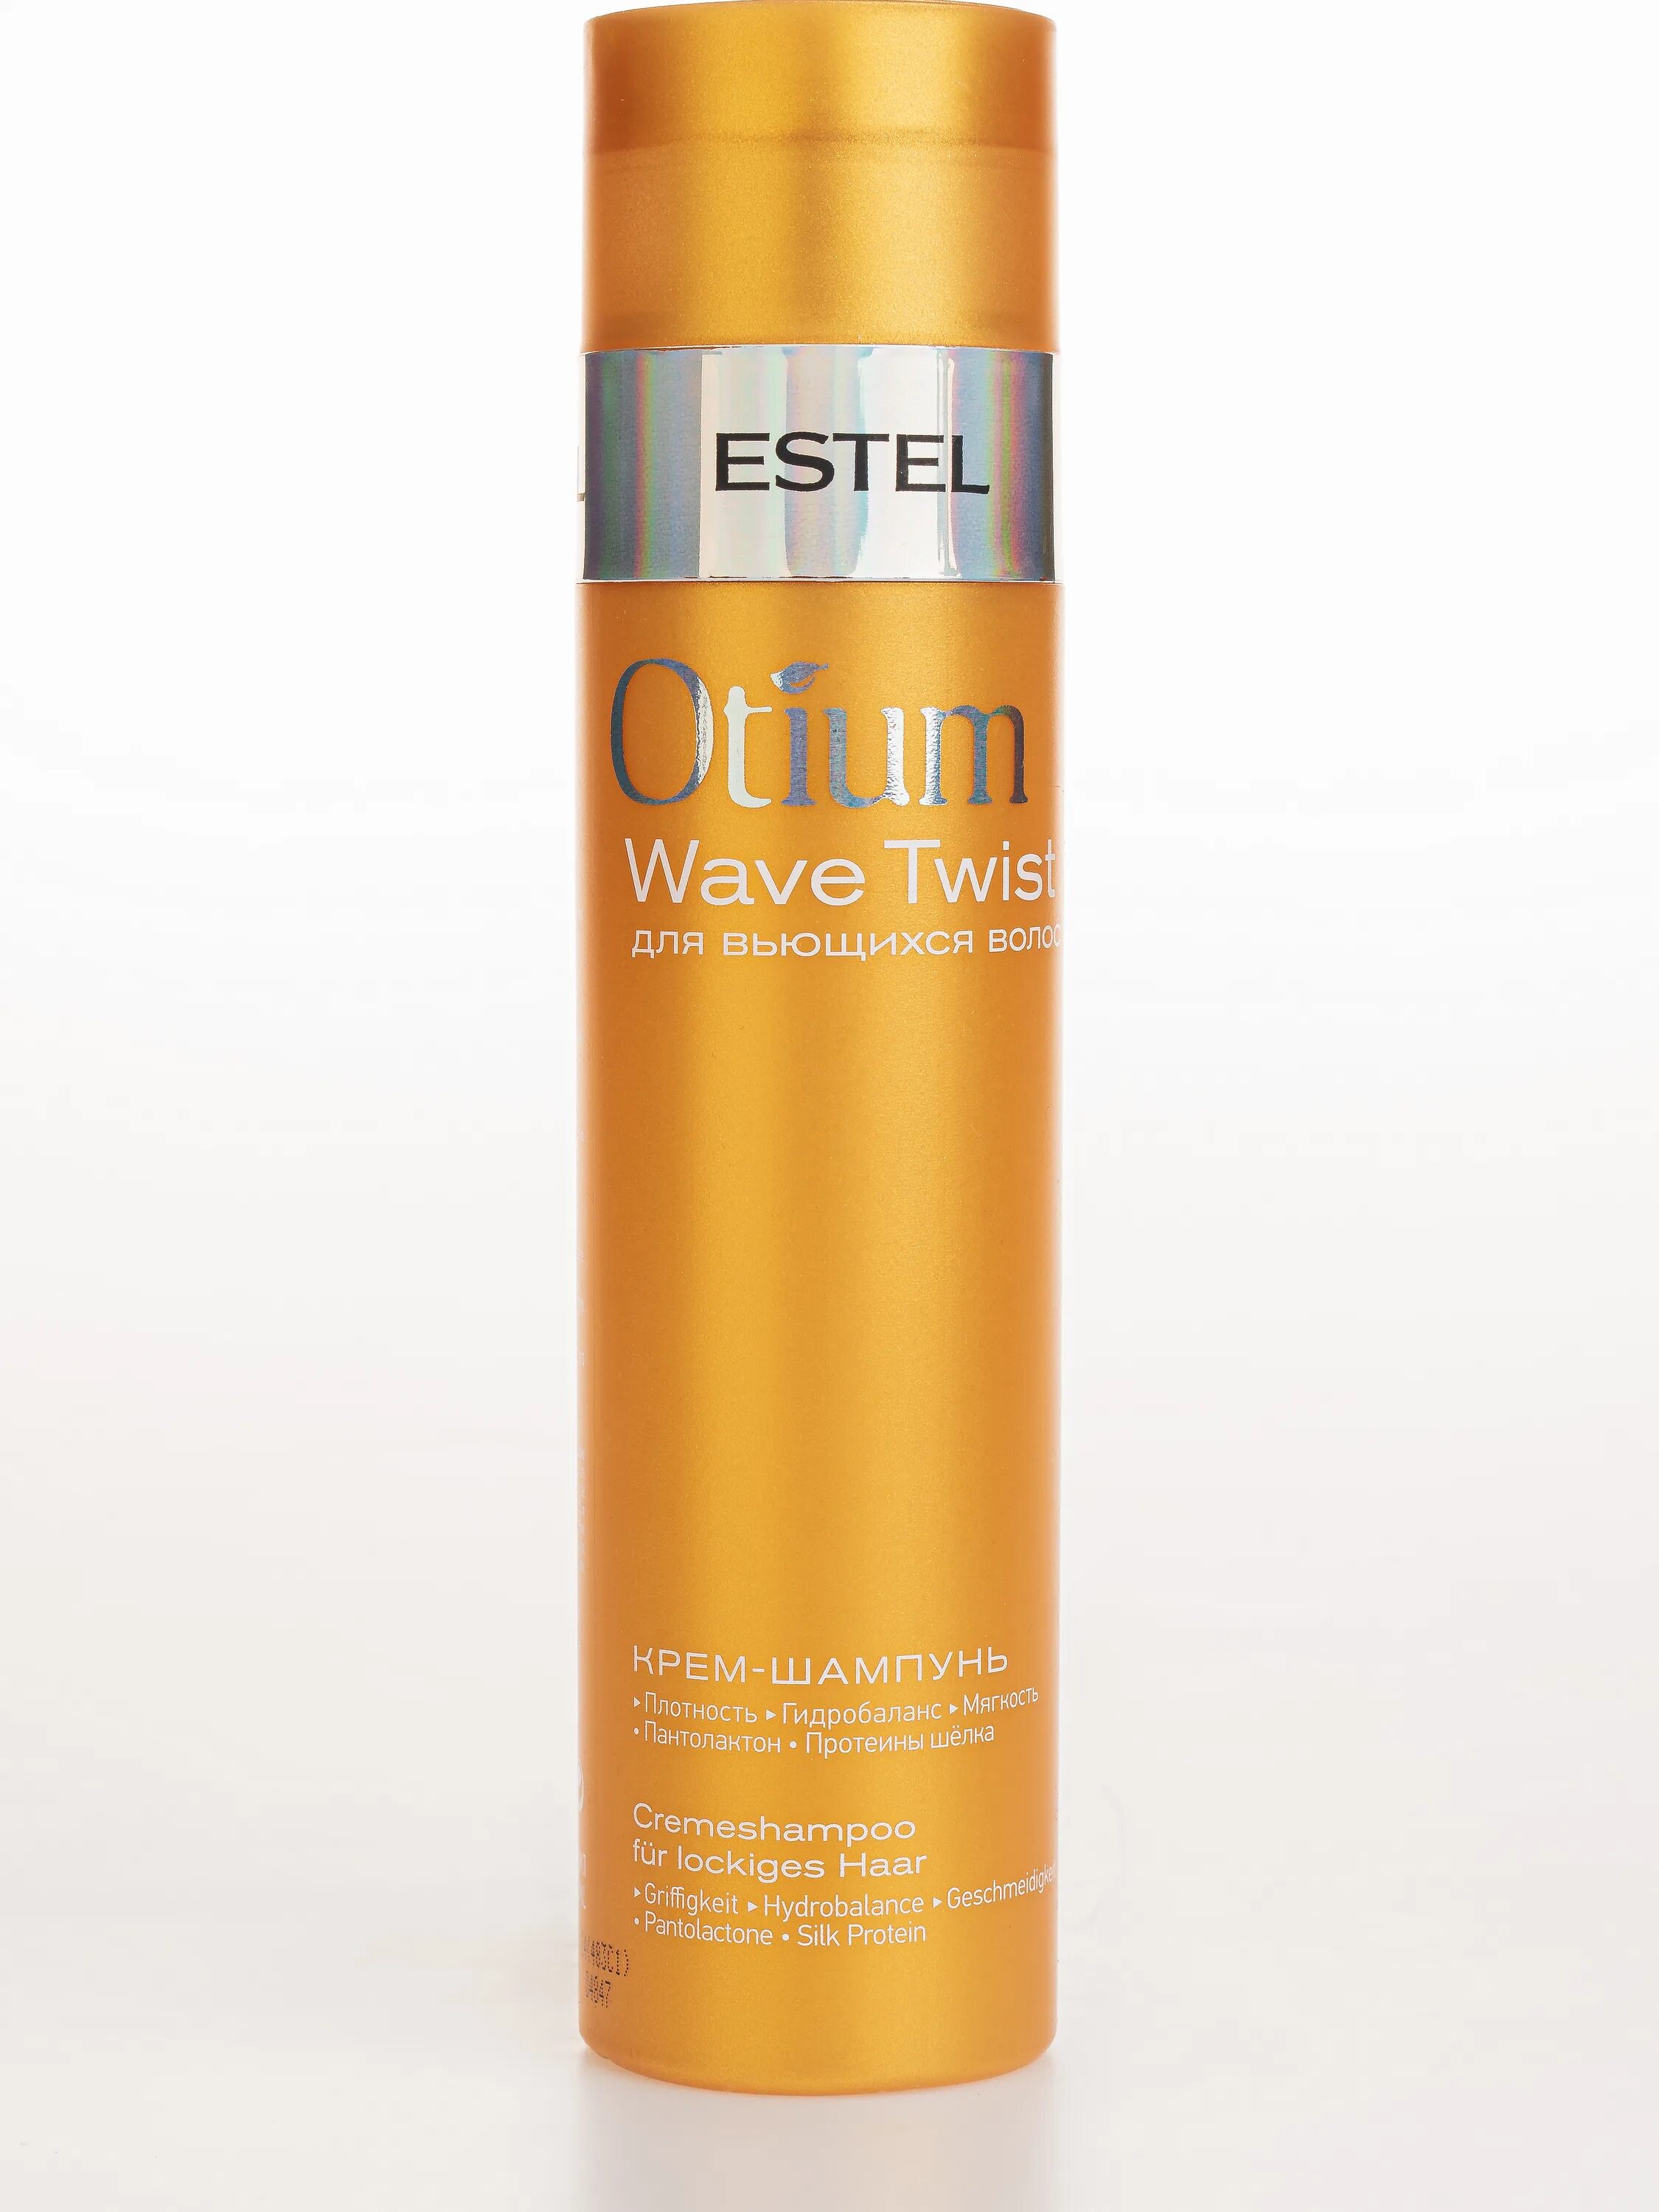 Шампунь Estel Otium Wave Twist для вьющихся волос. Estel крем-шампунь Otium Wave Twist. Estel Otium Wave Twist крем-шампунь для вьющихся волос 250 мл. Estel Otium Wave Twist крем шампунь для вьющихся. Шампунь для вьющихся волос отзывы